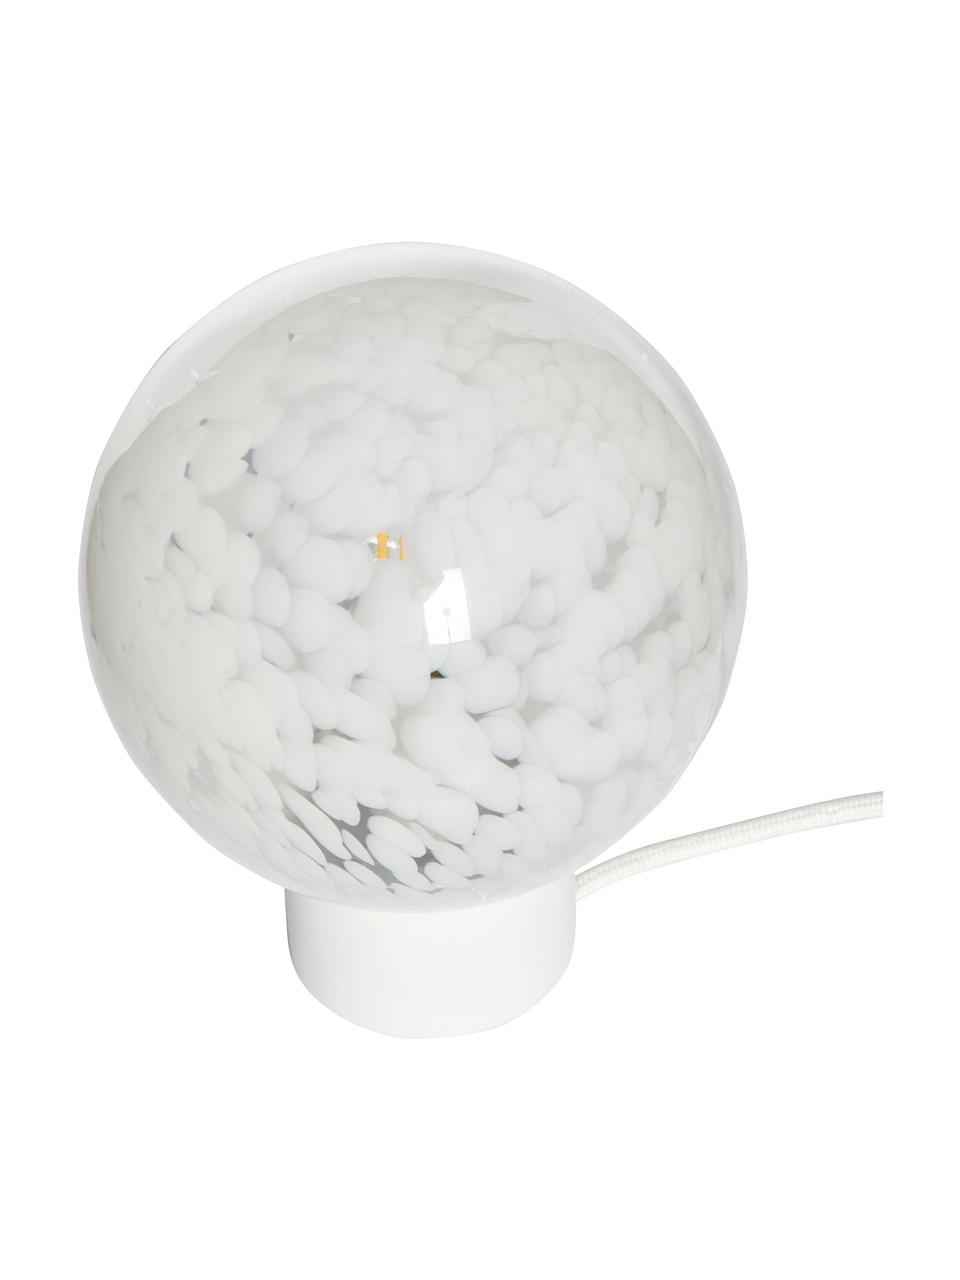 Kleine Kugel-Tischlampe Cloud mit Tupfen-Muster, Lampenschirm: Glas, Lampenfuß: Metall, beschichtet, Weiß, Ø 15 x H 21 cm